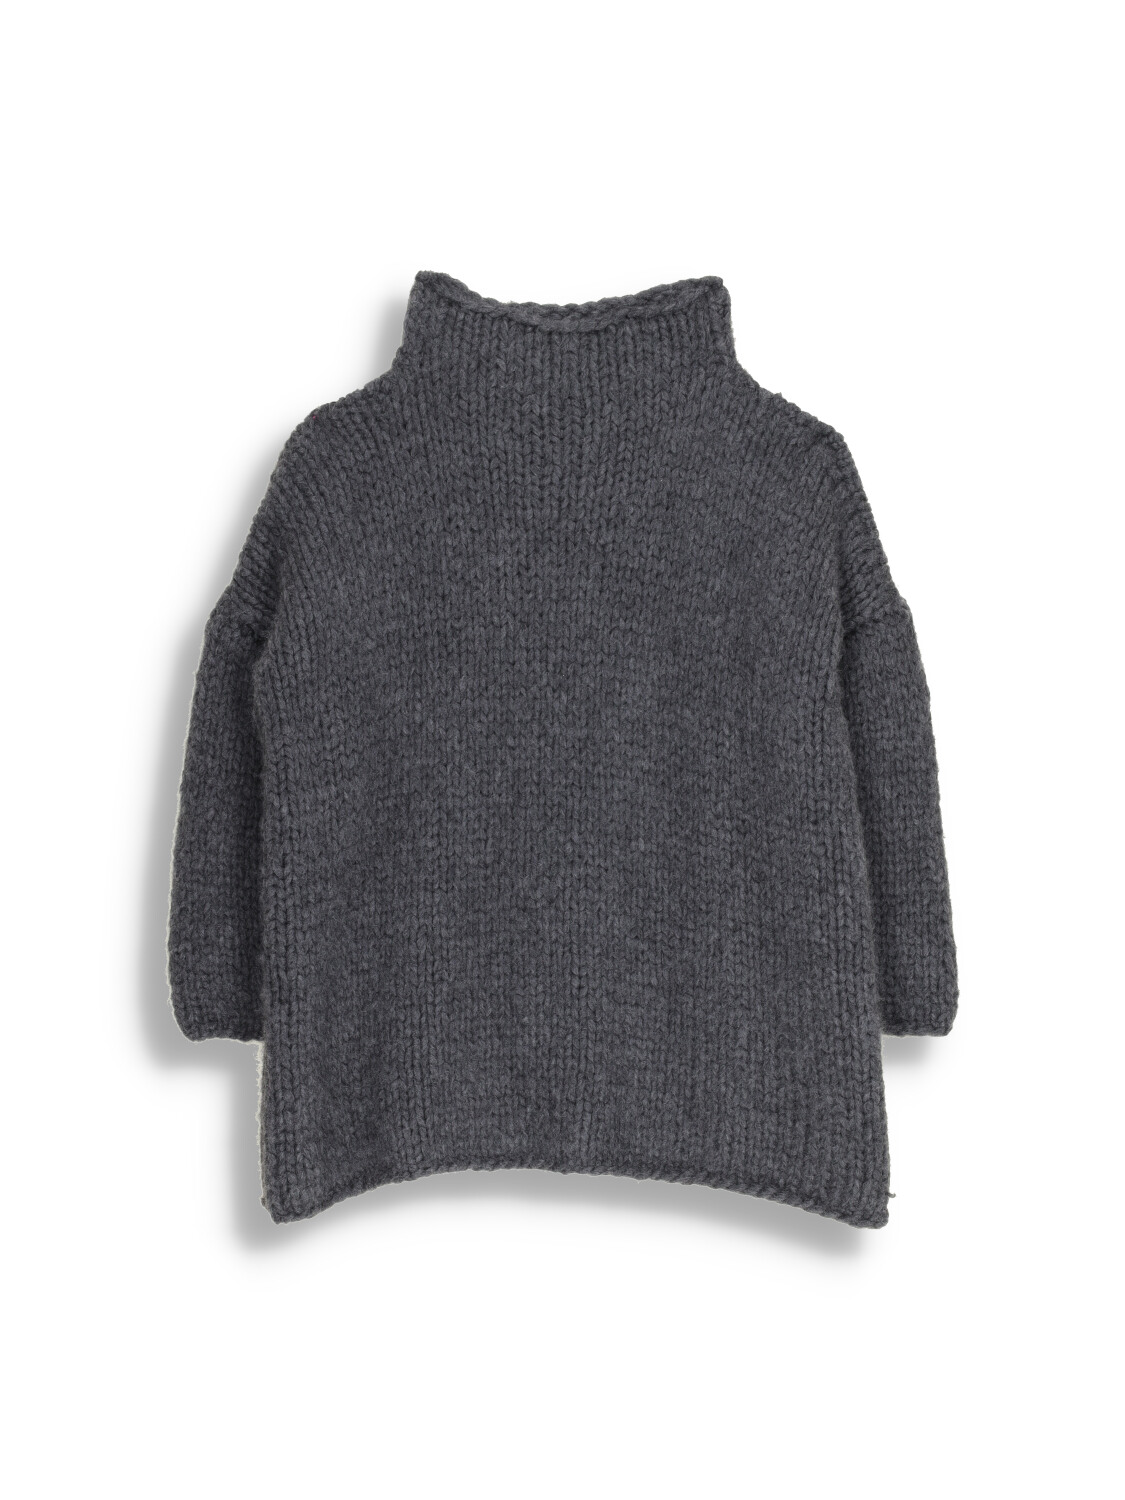 Lea 2 - Cashmere turtleneck sweater